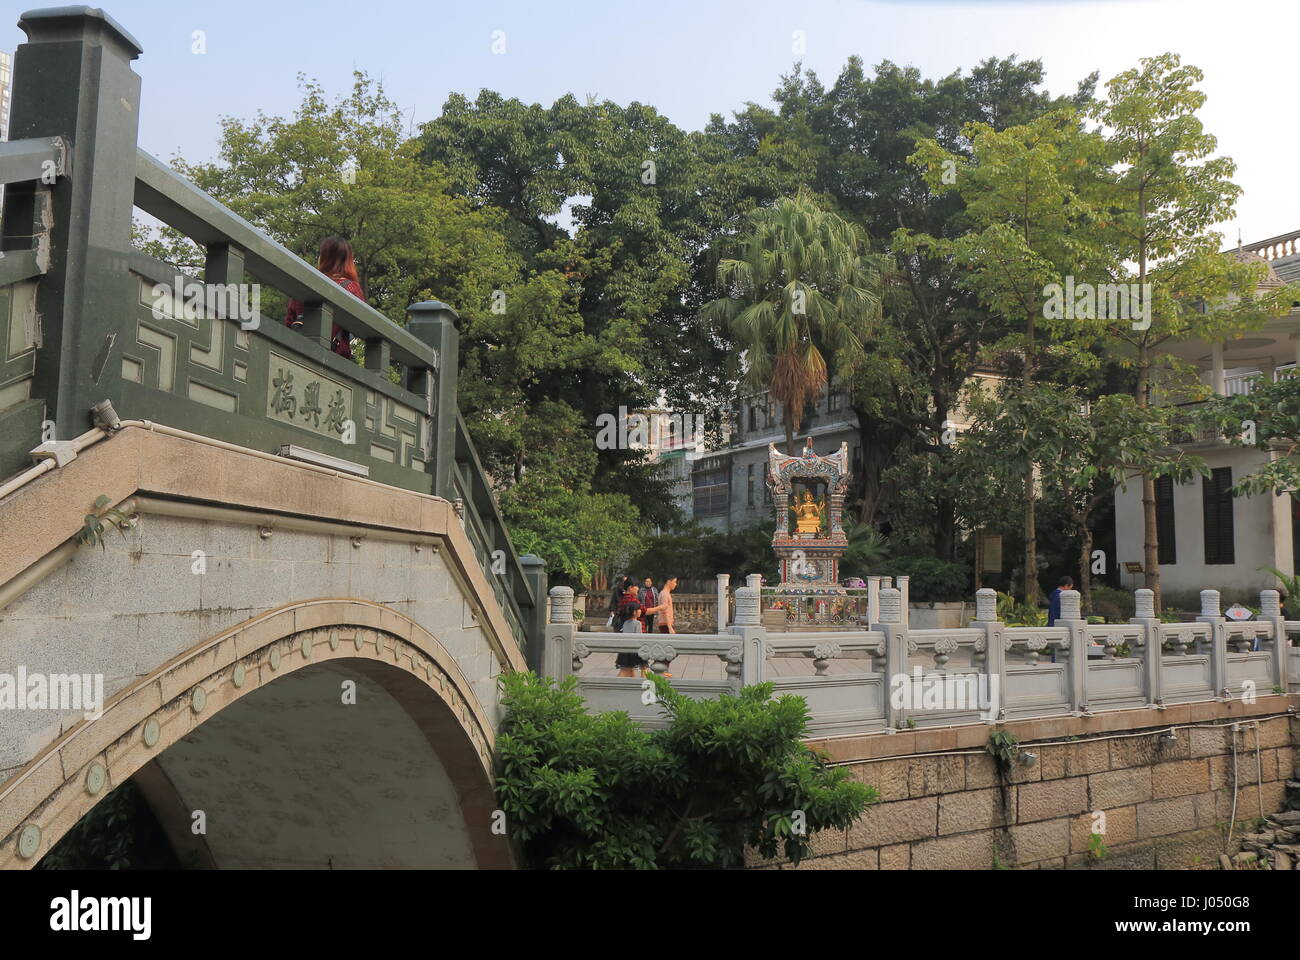 Personnes visitent la ville antique de Xiguan à Guangzhou en Chine. Xiguan) est célèbre pour son architecture traditionnelle et de la culture. Banque D'Images